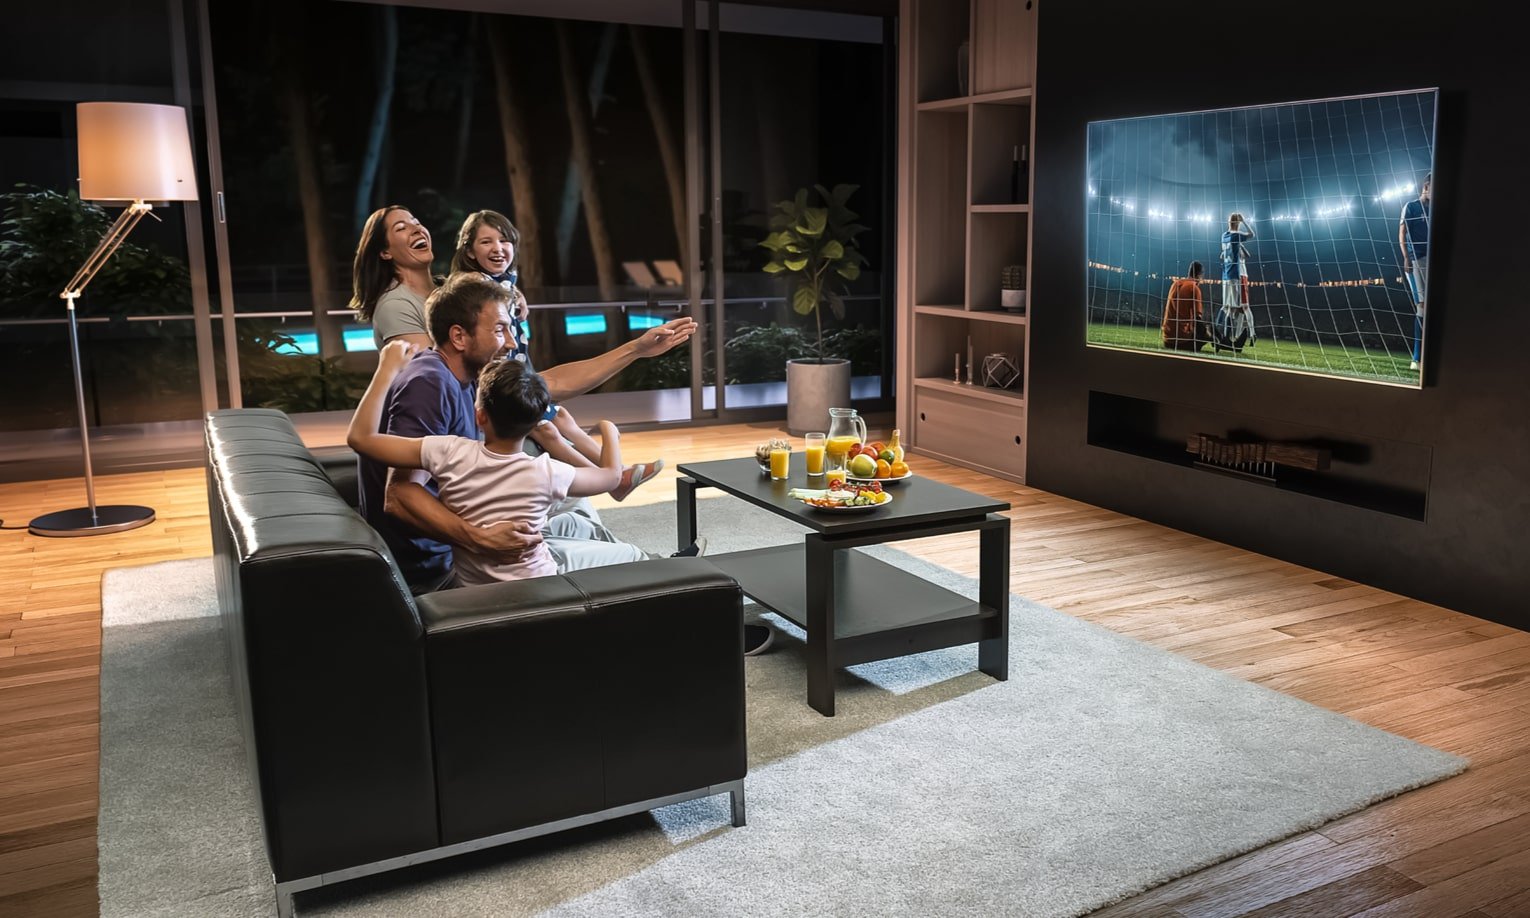 просмотр футбольной игры по телевизору всей семьей